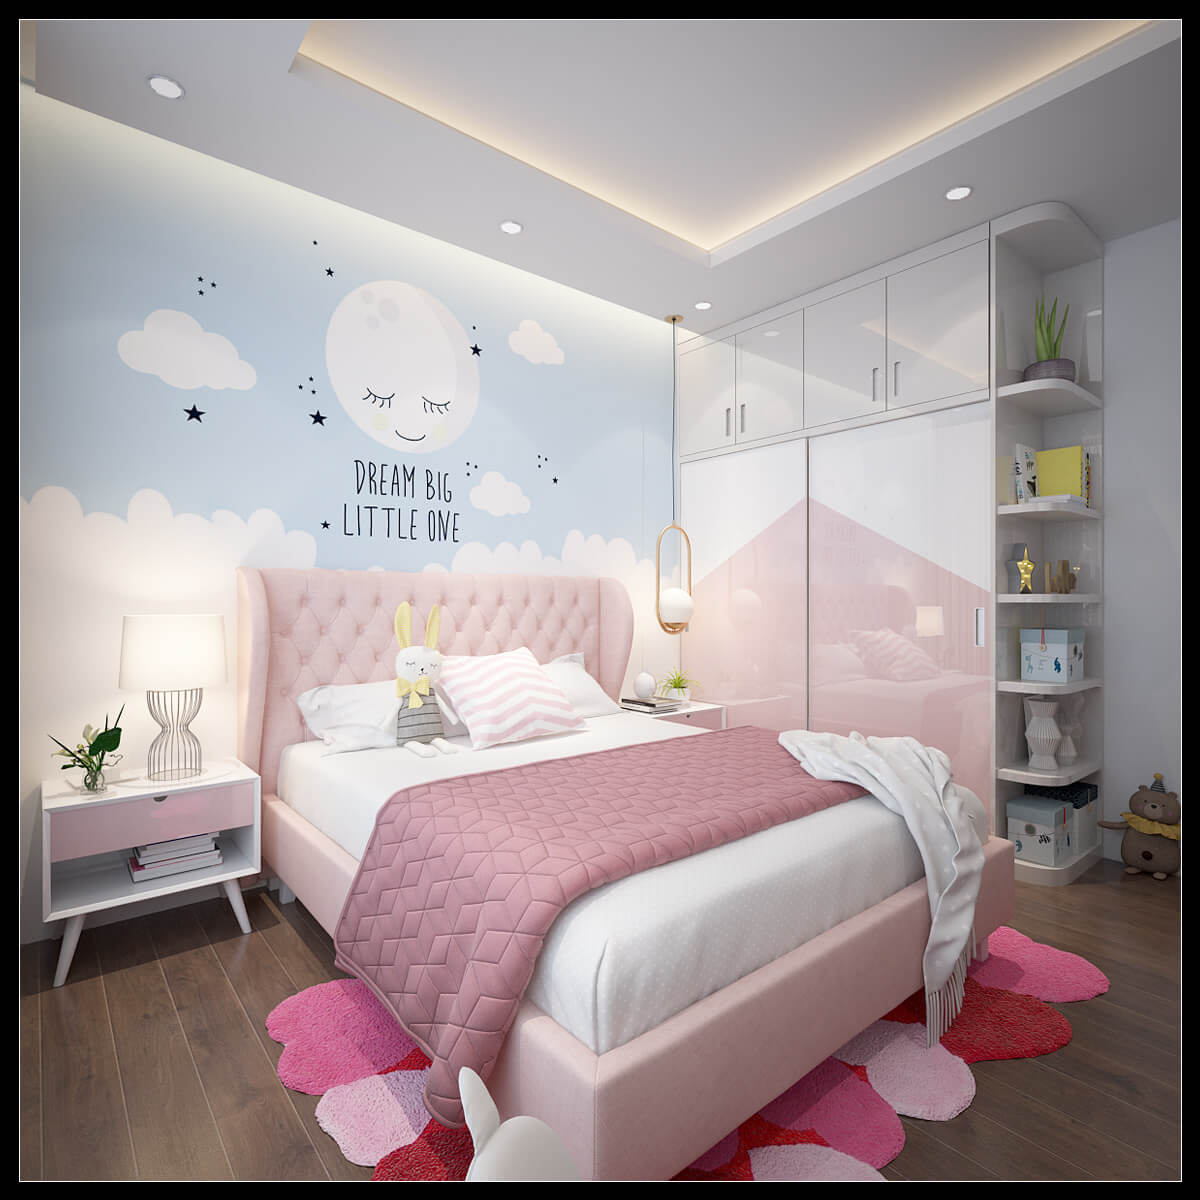 Hình ảnh: Căn phòng ngủ 2 được thiết kế với tone màu hồng làm chủ đạo